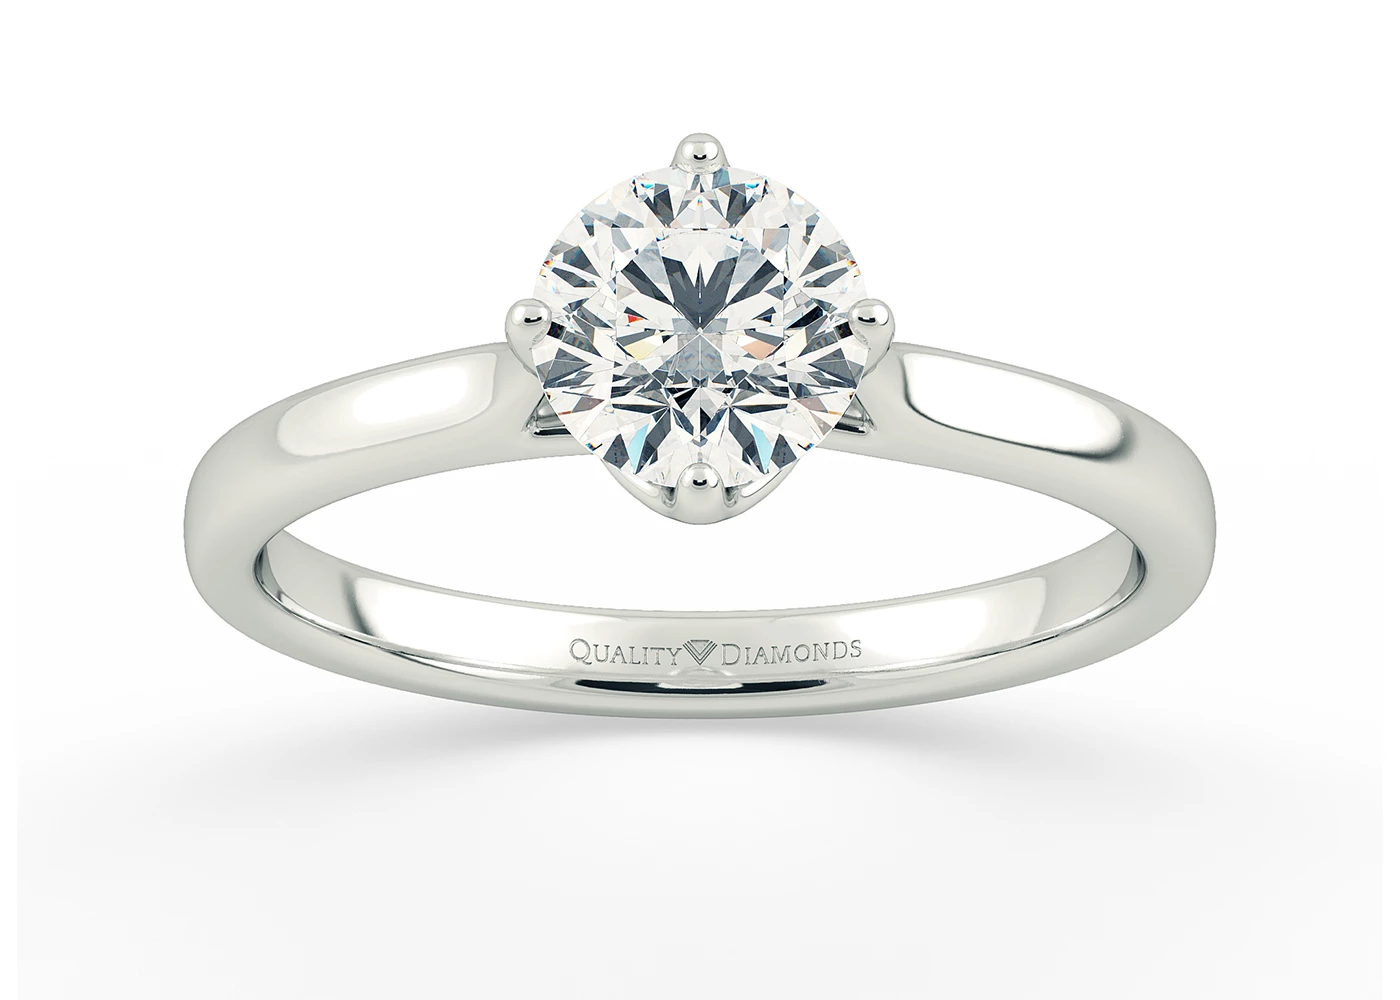 Round Brilliant Promessa Diamond Ring in Platinum